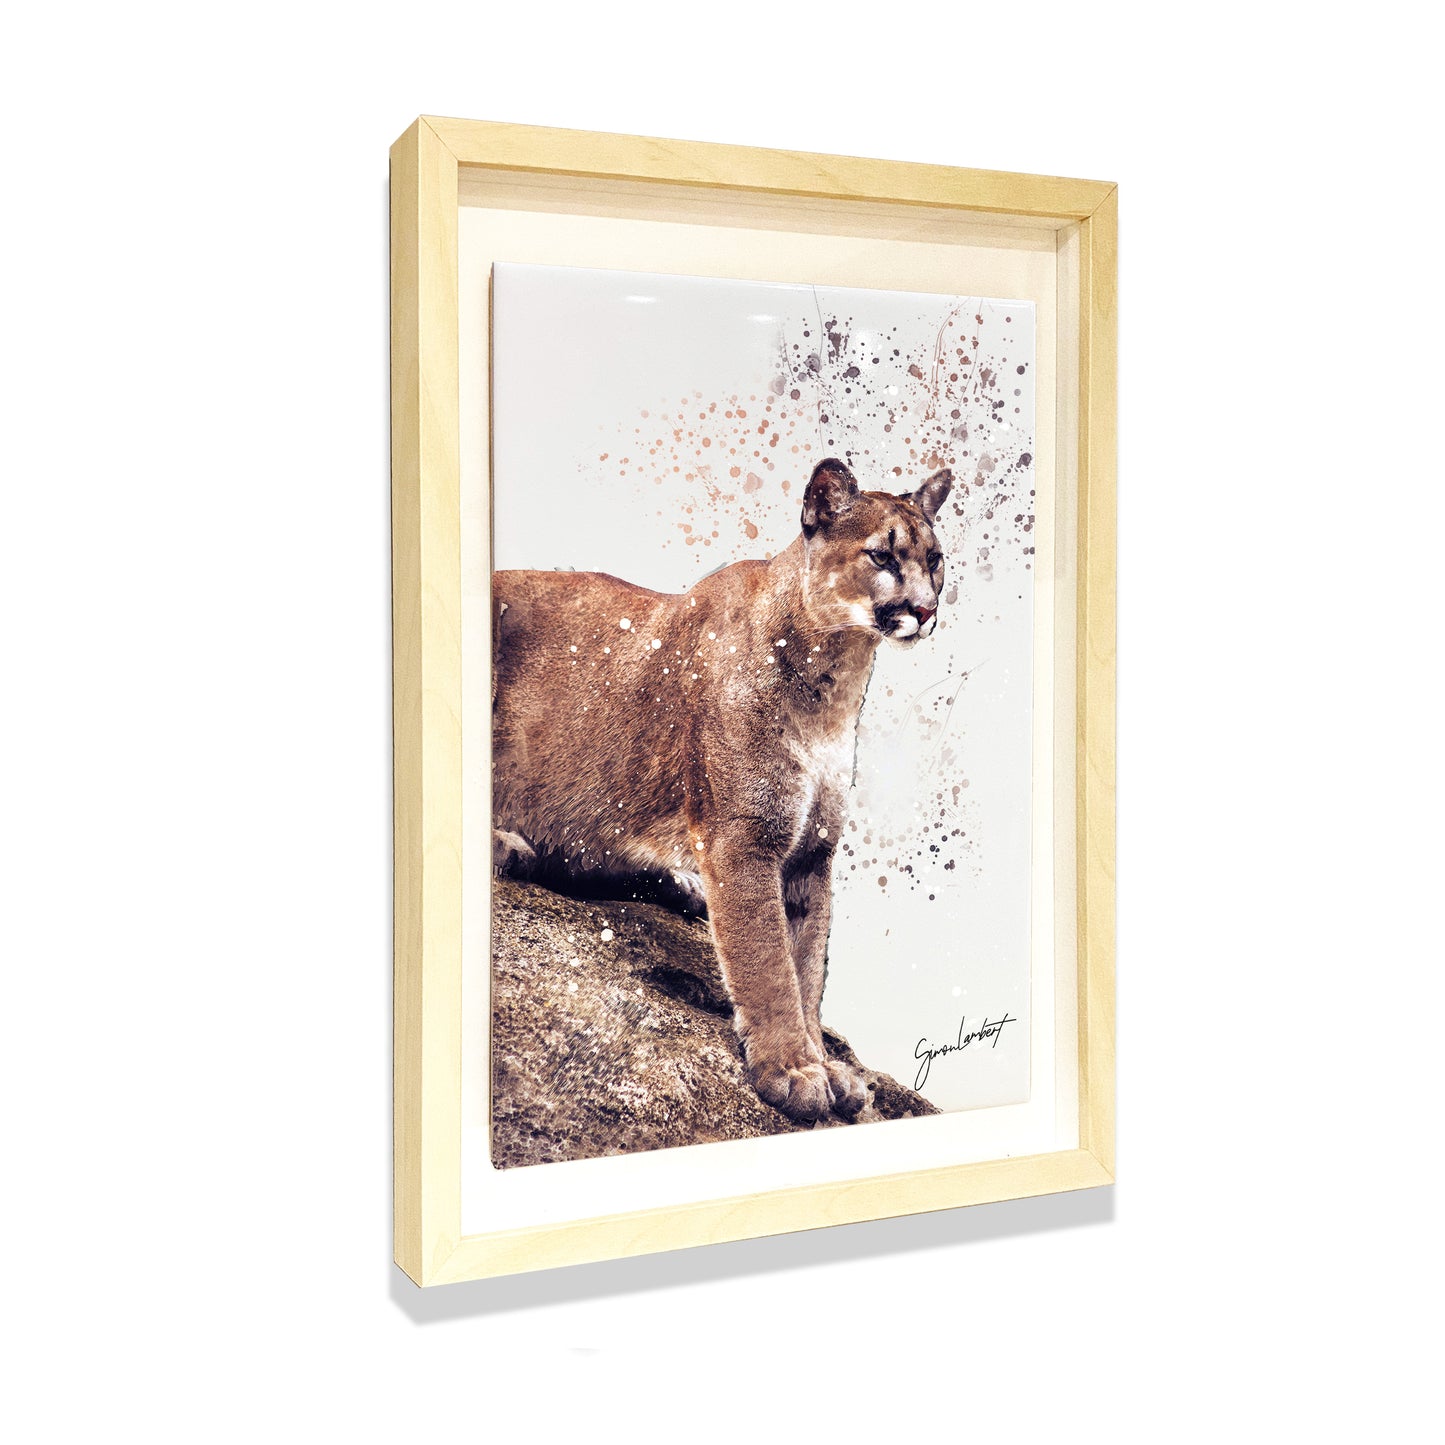 Cougar Portrait Brush Splatter Style Artwork - Framed CERAMIC TILE Art